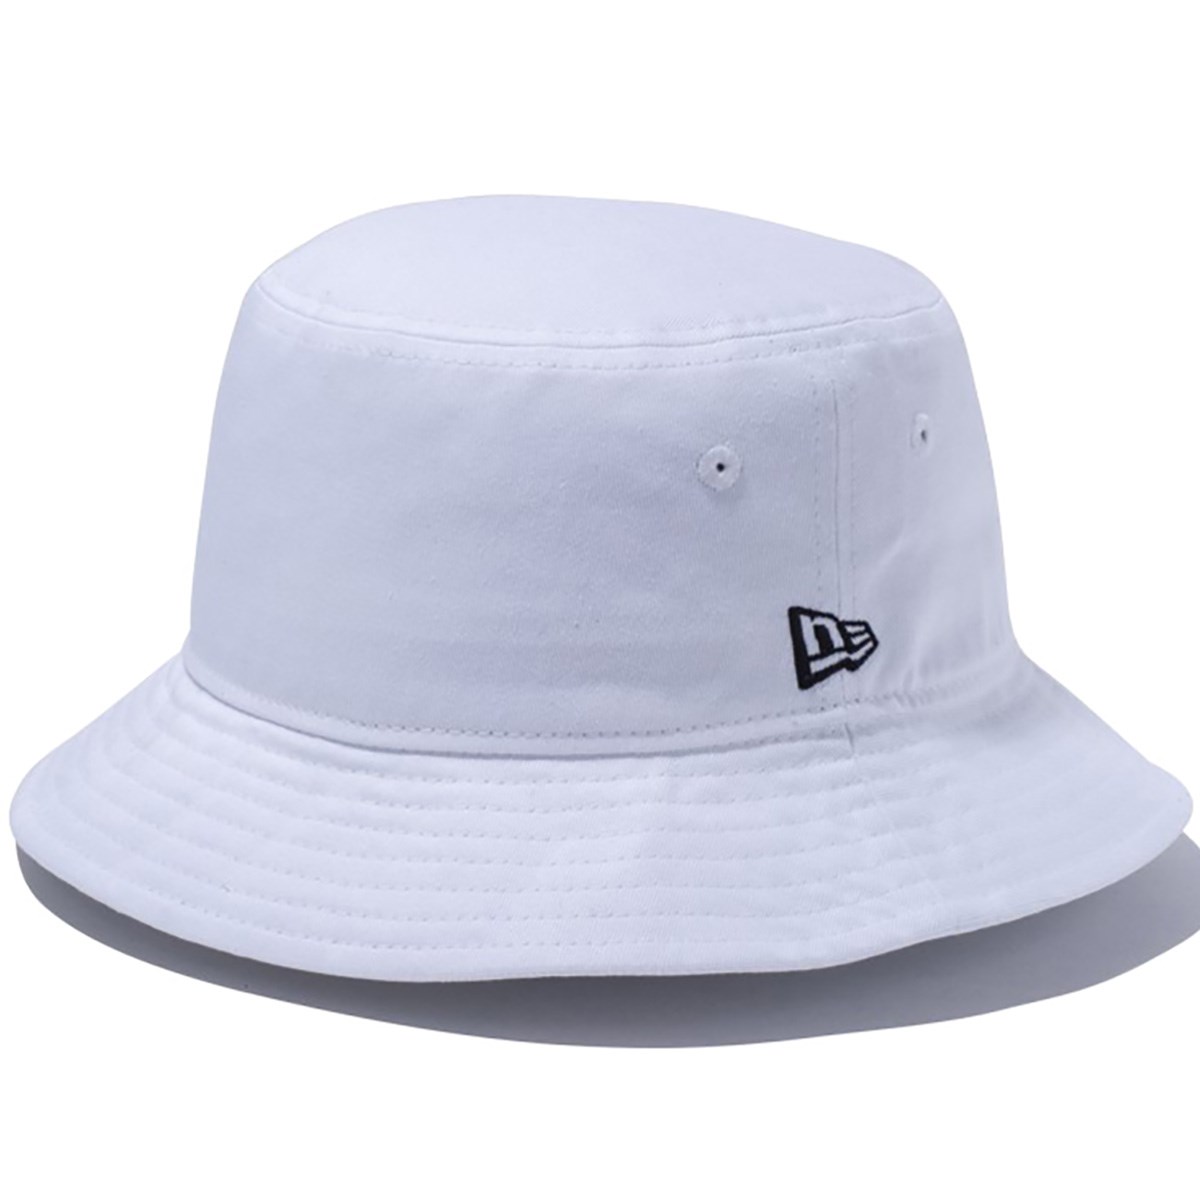 「ニューエラ BUCKET01 バケットハット 」（帽子）- ゴルフ(GOLF)用品のネット通販